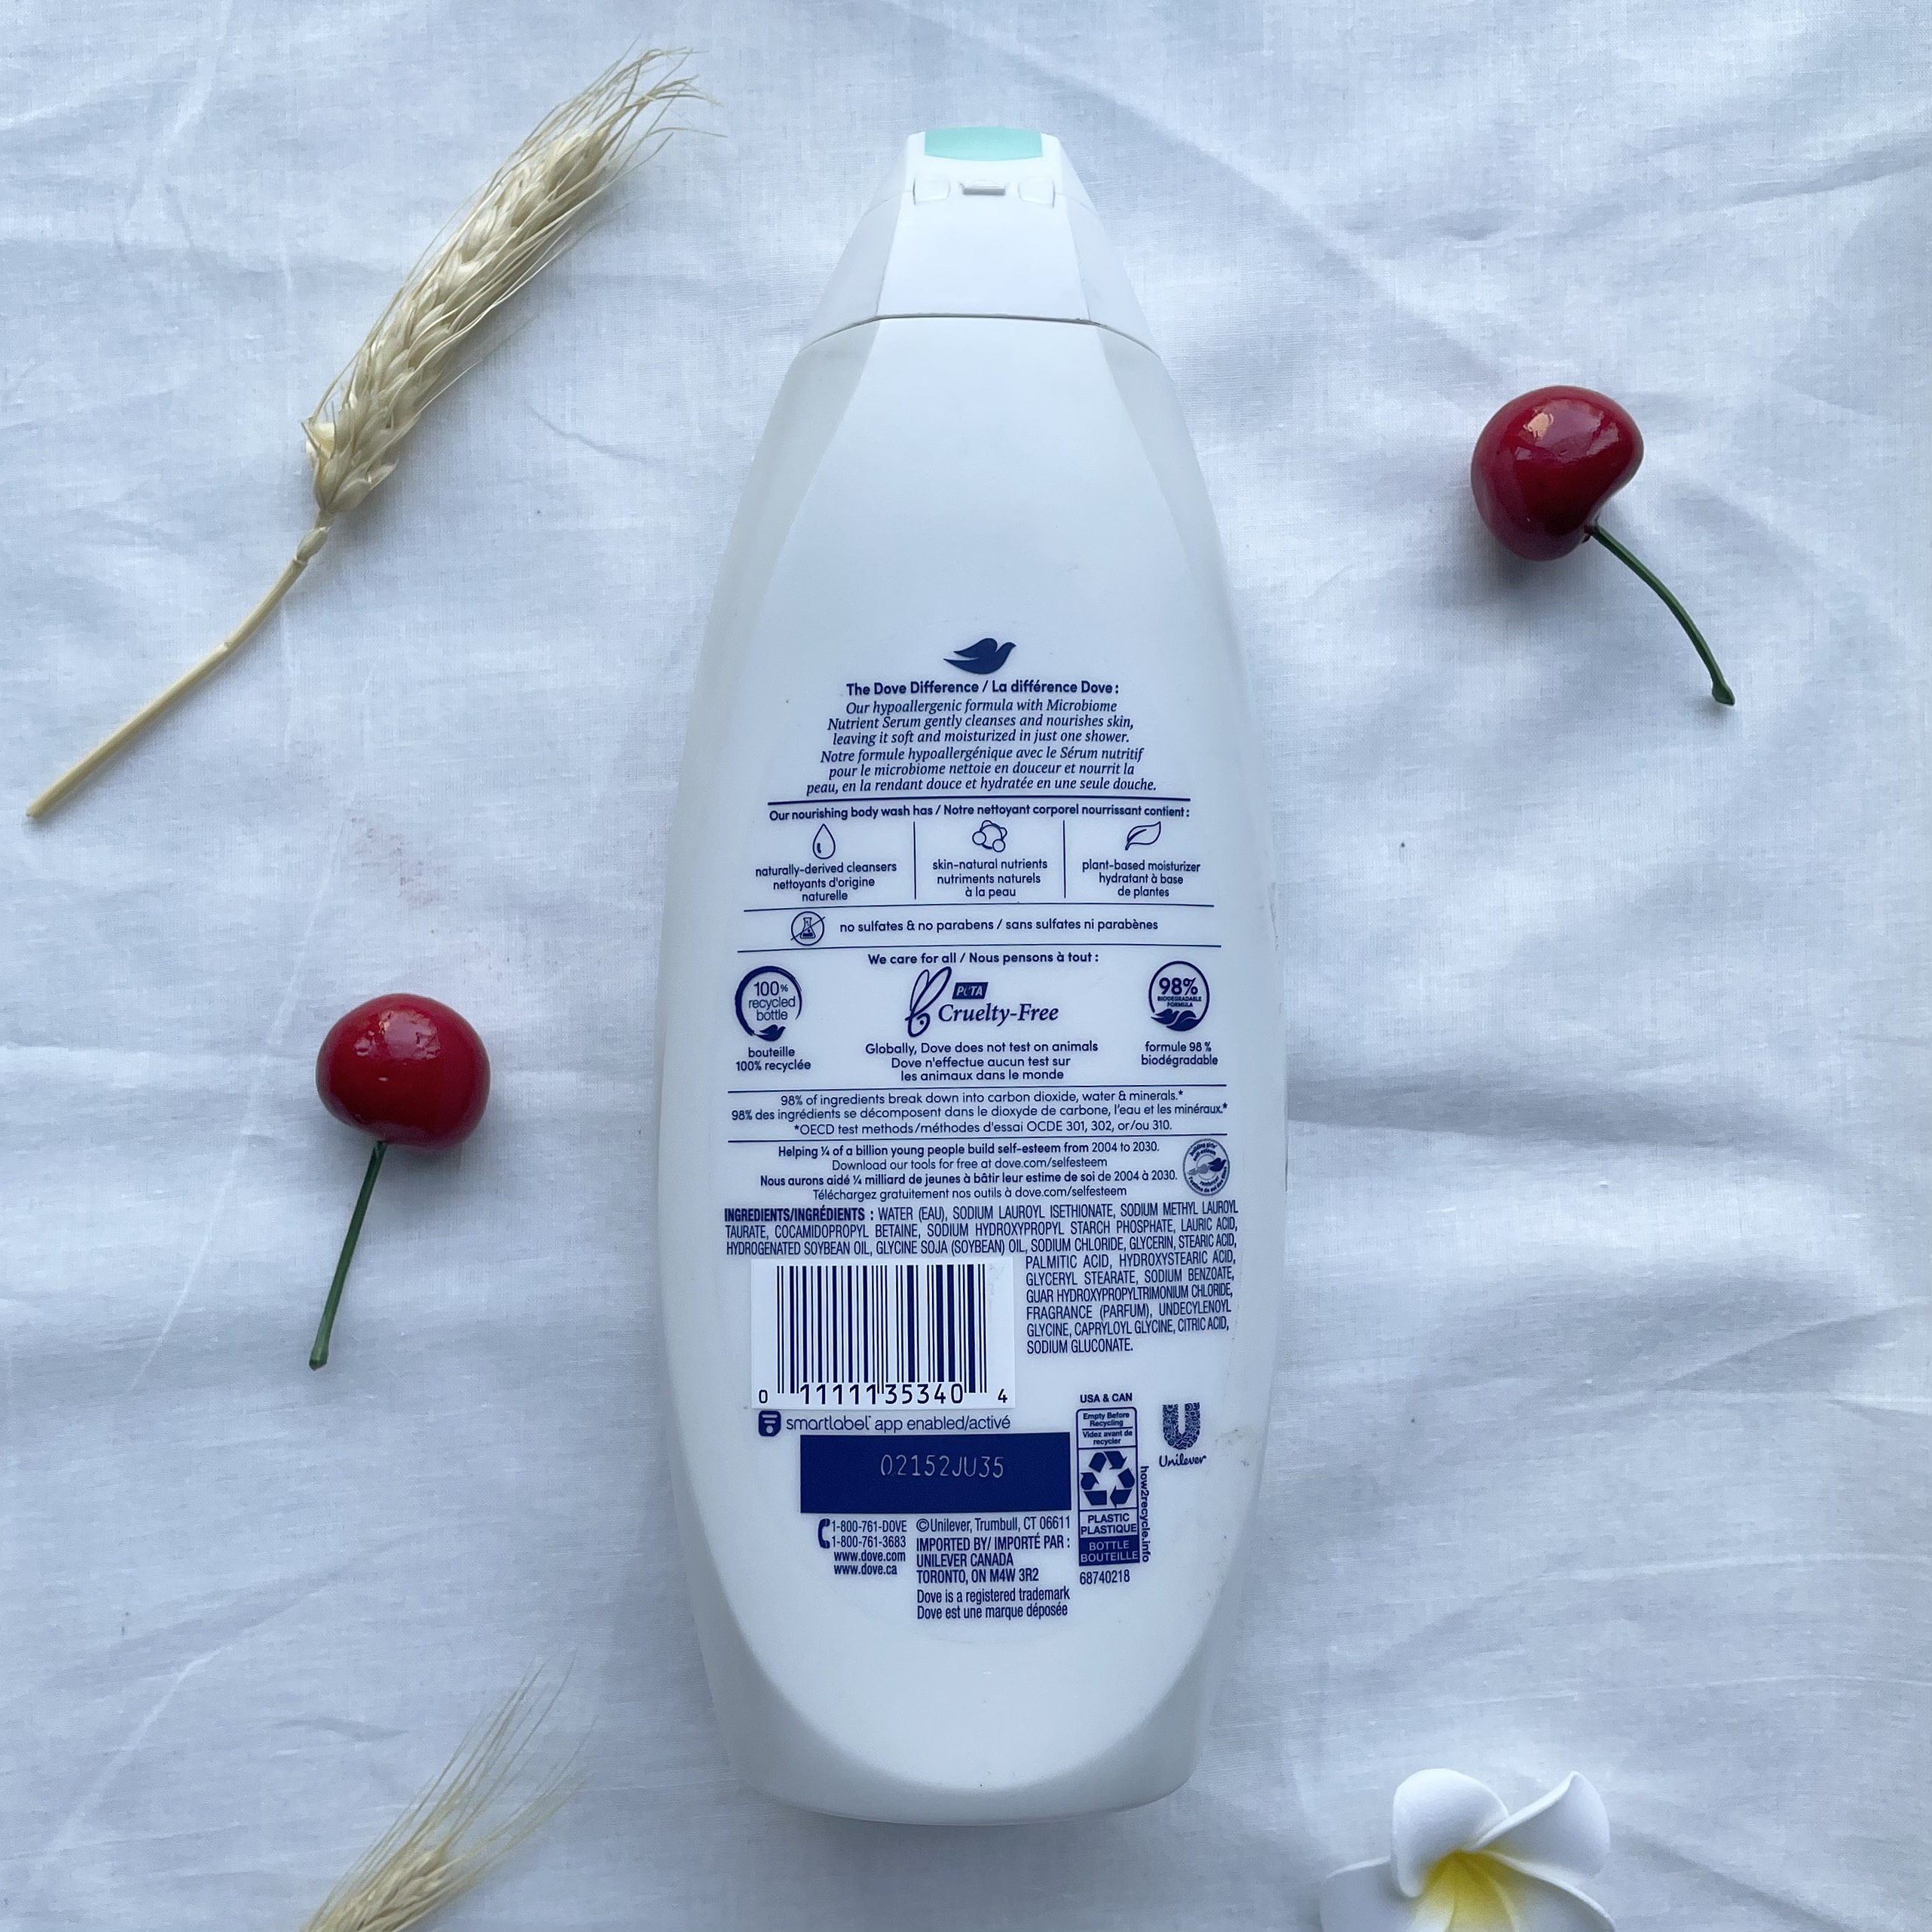 Sữa Tắm Dove Sensitive Cho Da Nhạy Cảm 710ml Hàng Nhập Mỹ